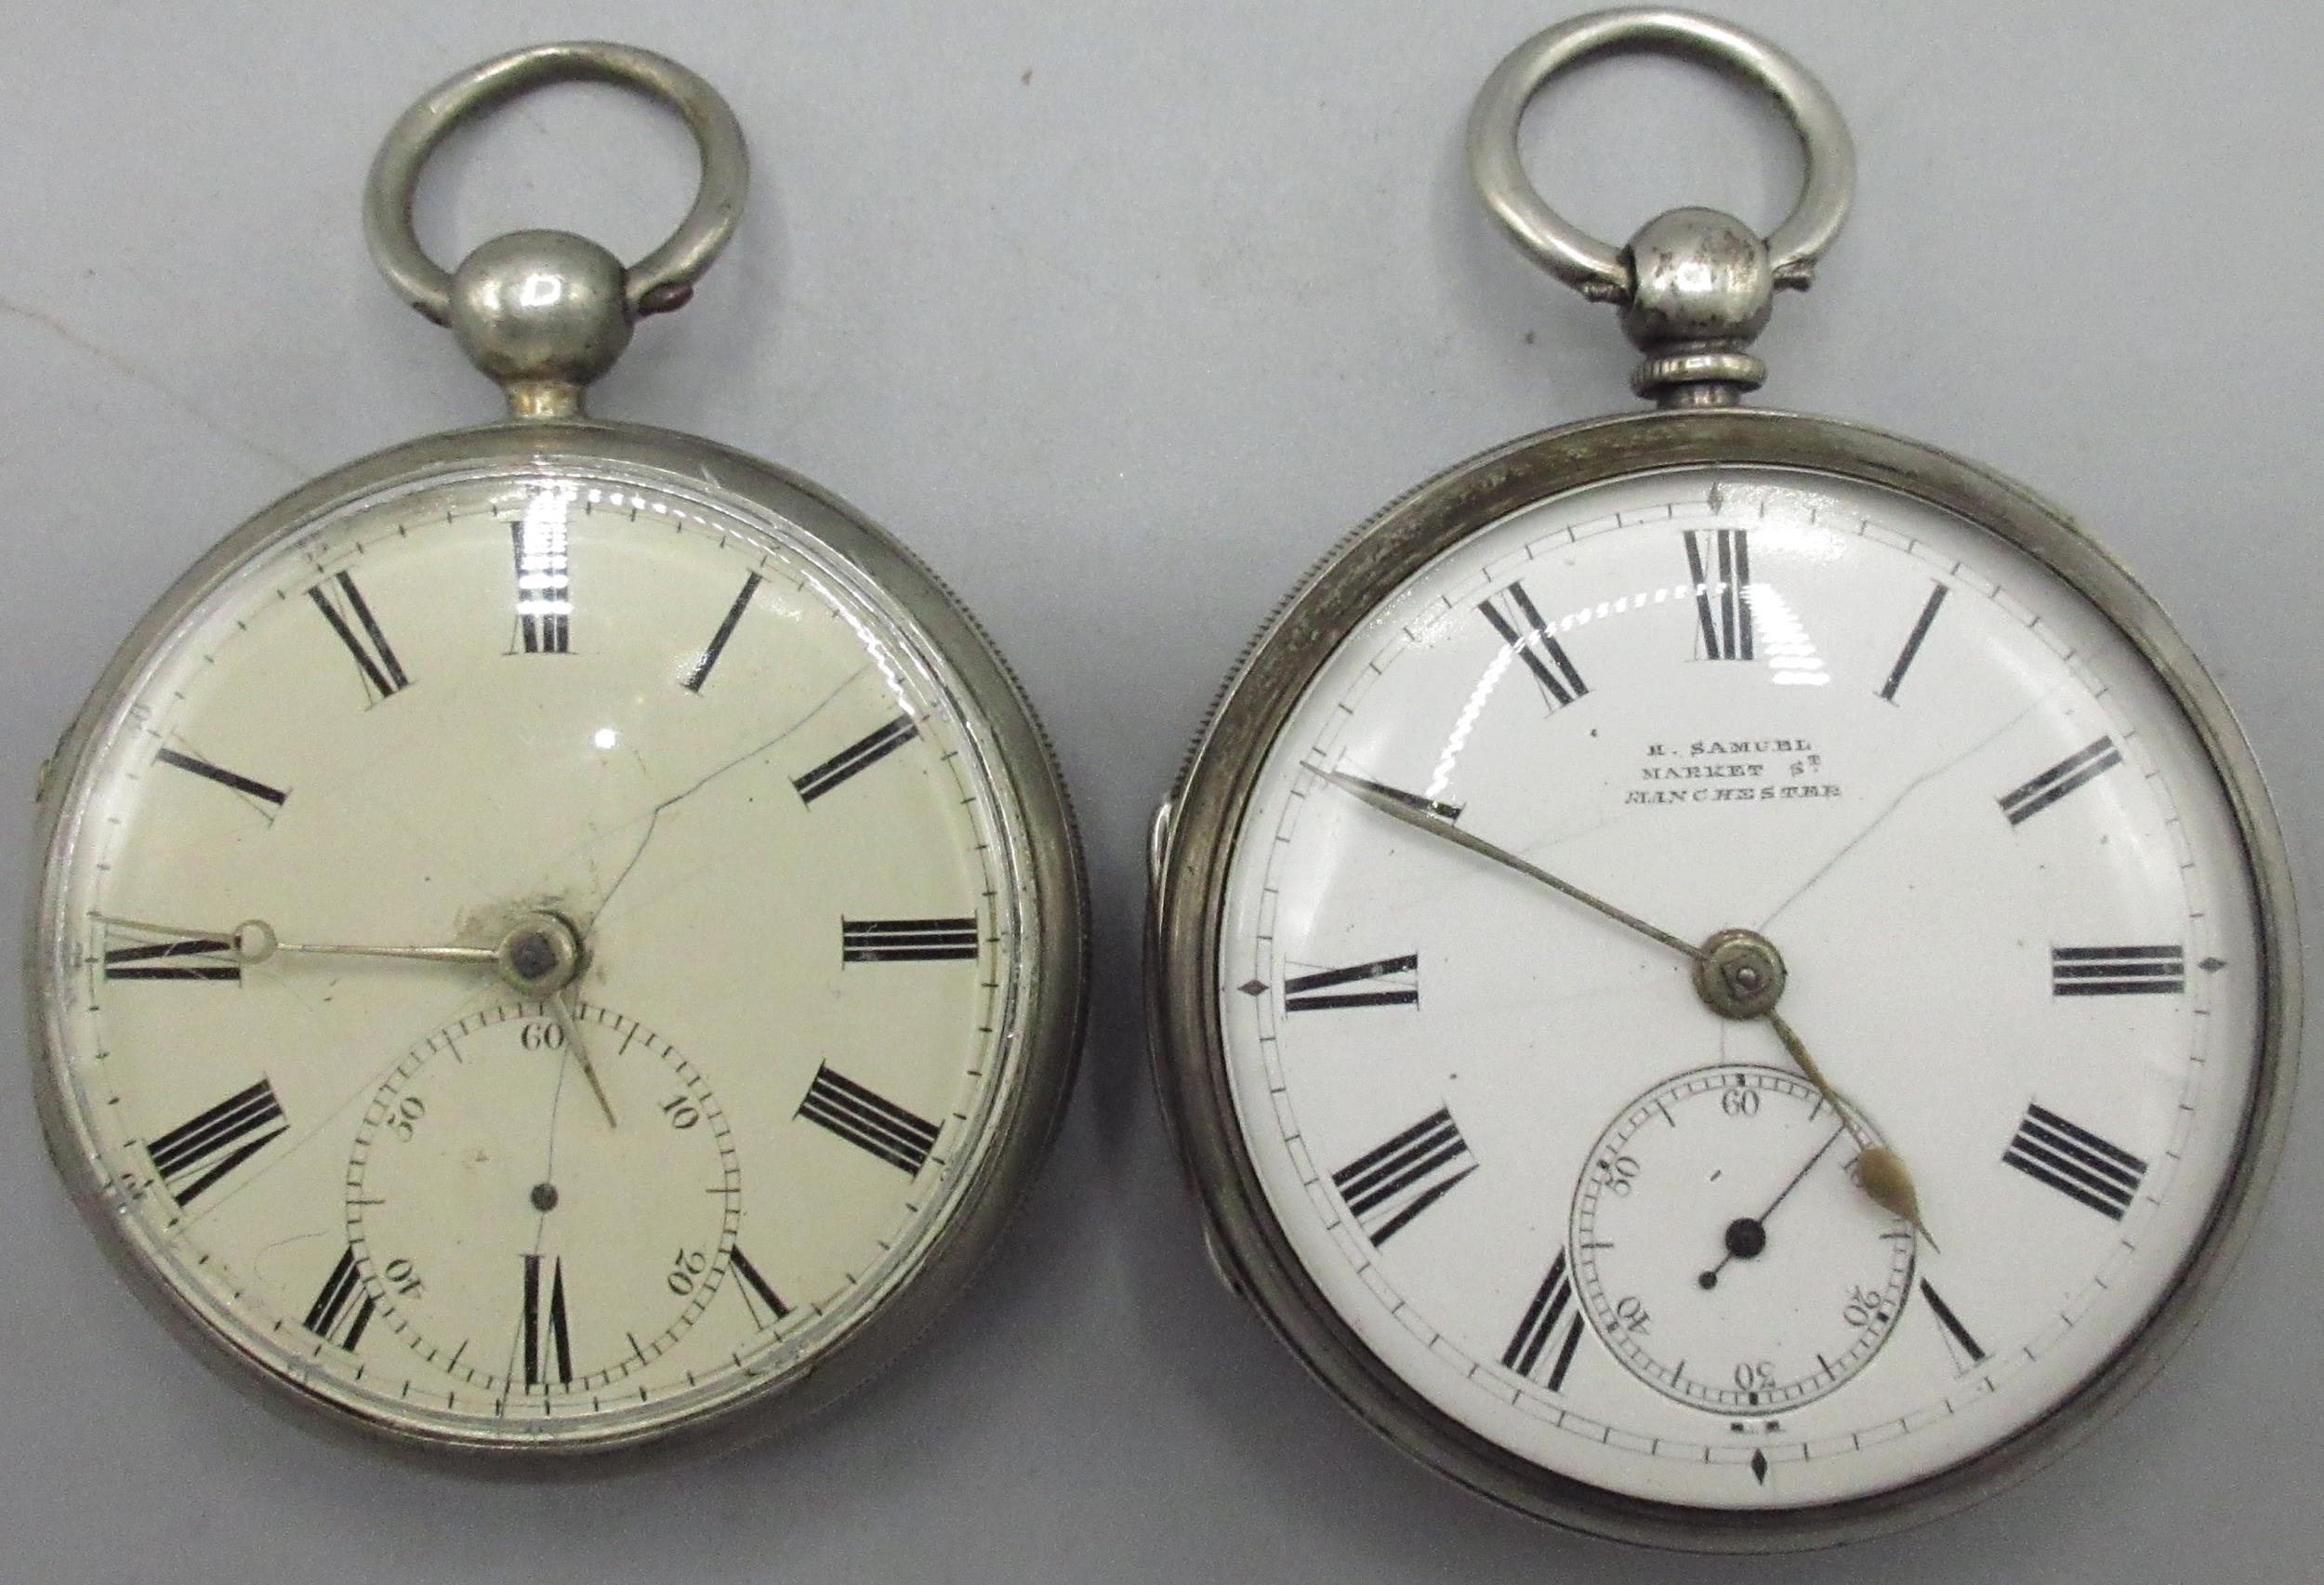 H. Samuel, Market St., Manchester - silver key wound pocket watch ...